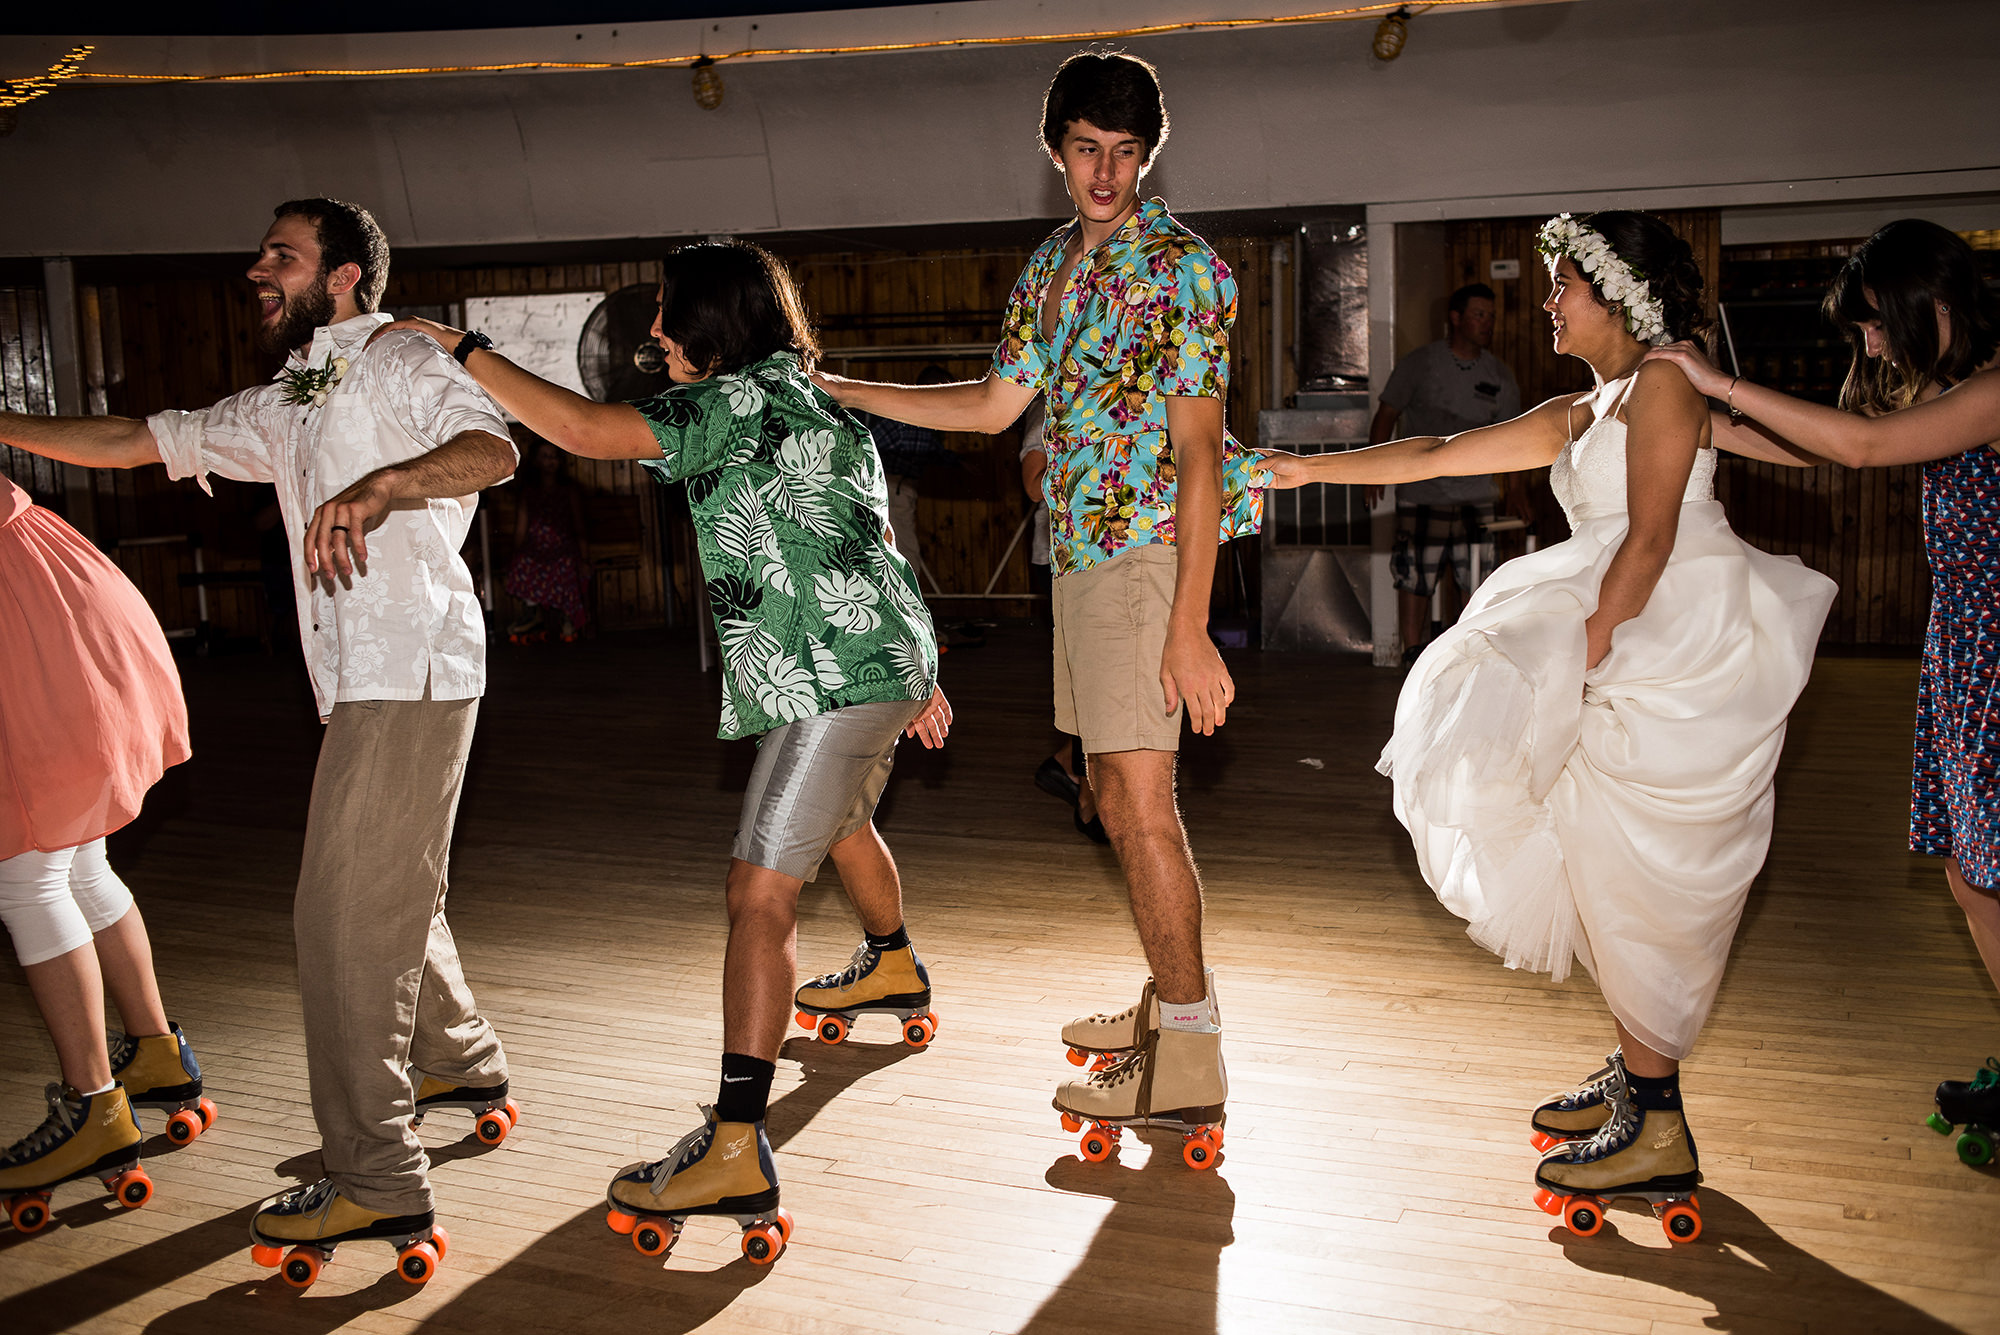 roller skating wedding reception.jpg